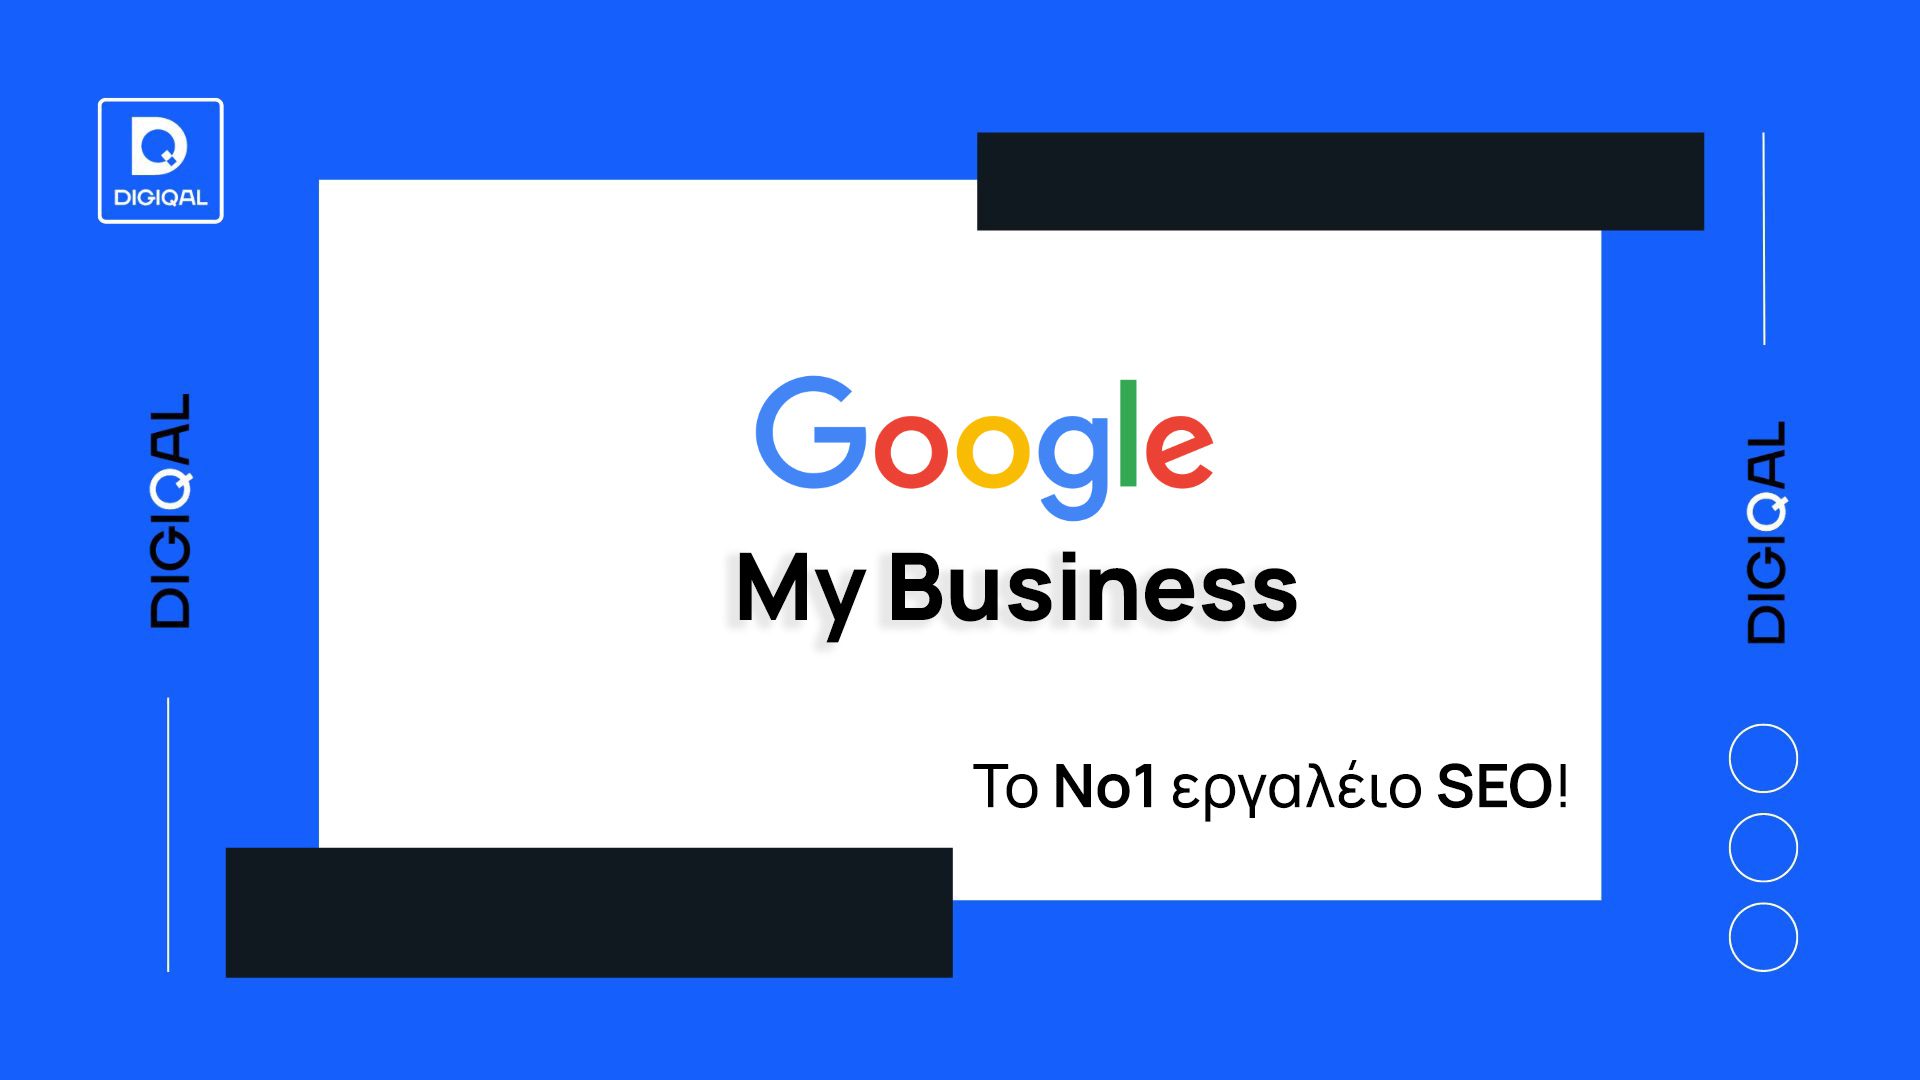 Κατασκευή ιστοσελίδων - Google My Business: Πως να δημιουργήσετε το εταιρικό σας προφίλ και τι να προσέξετε